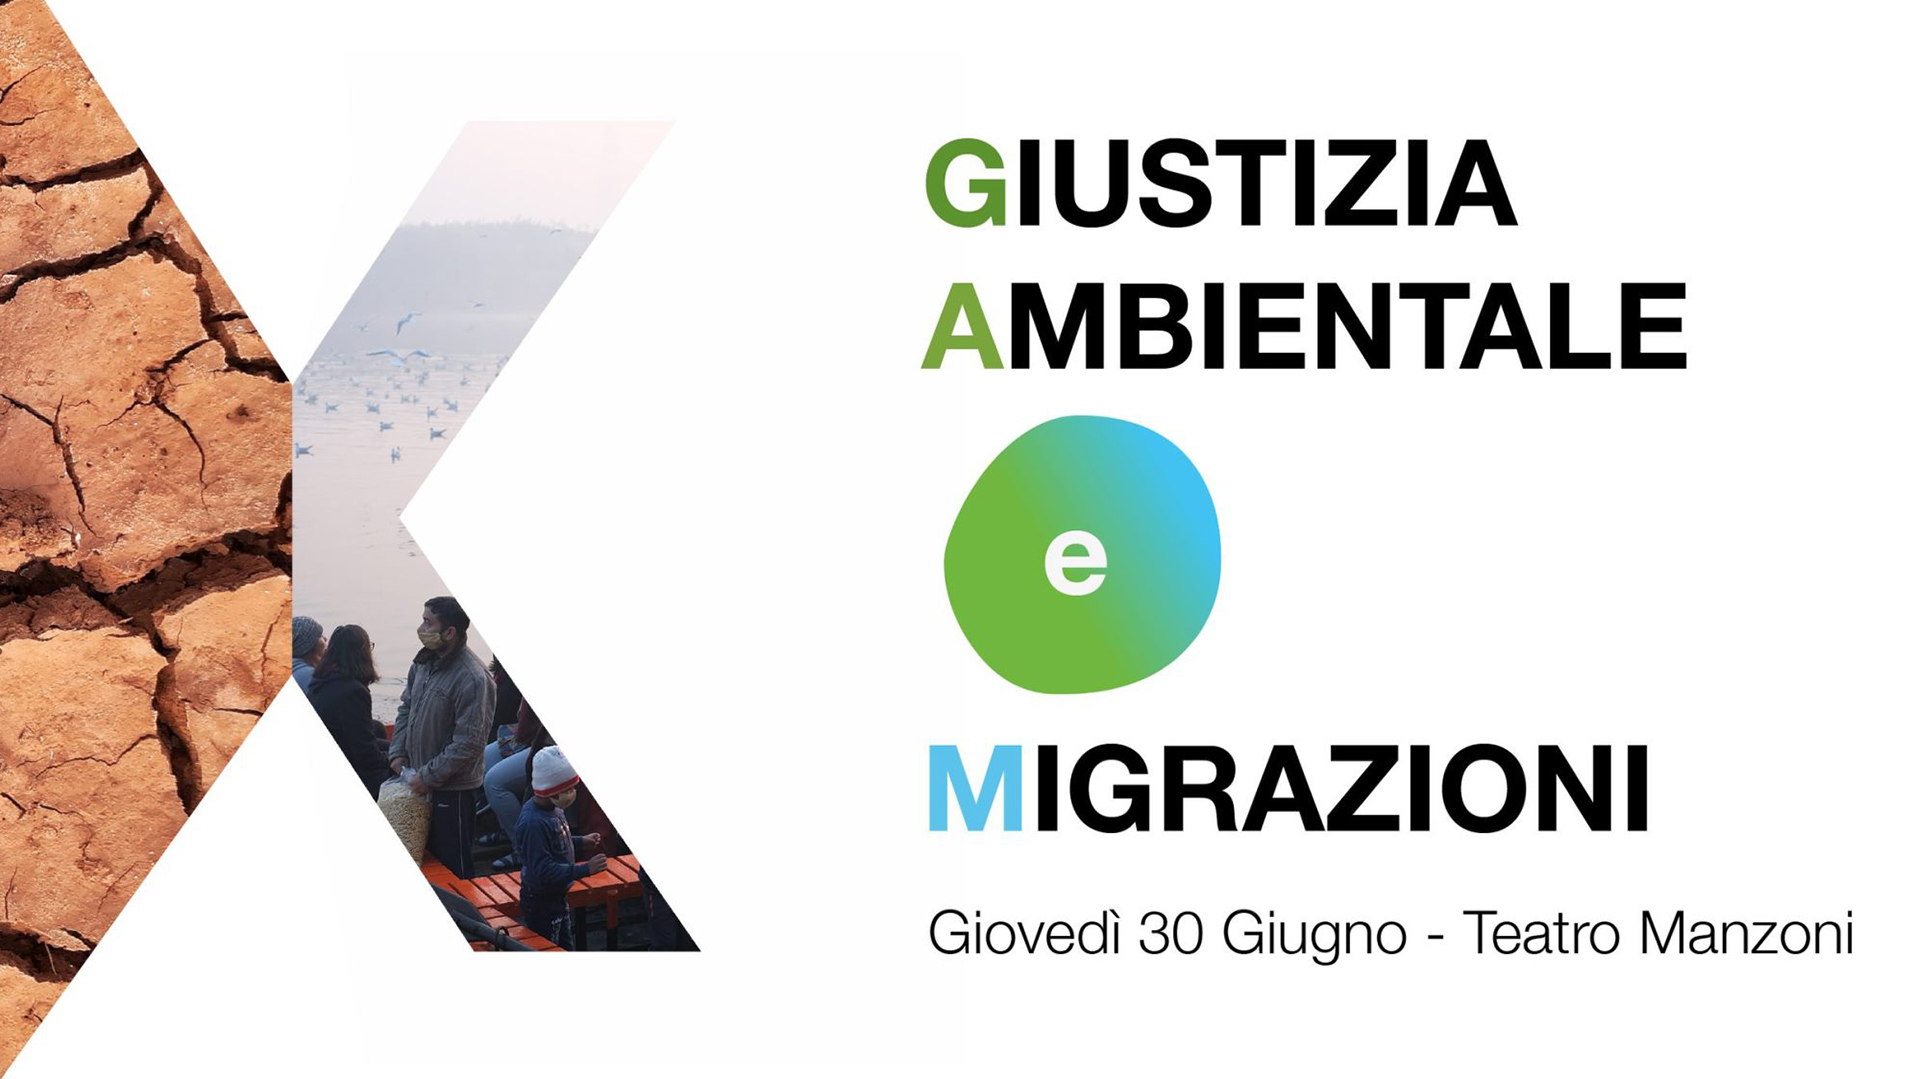 Giustizia Ambientale e Migrazioni – TEDx Bologna Salon